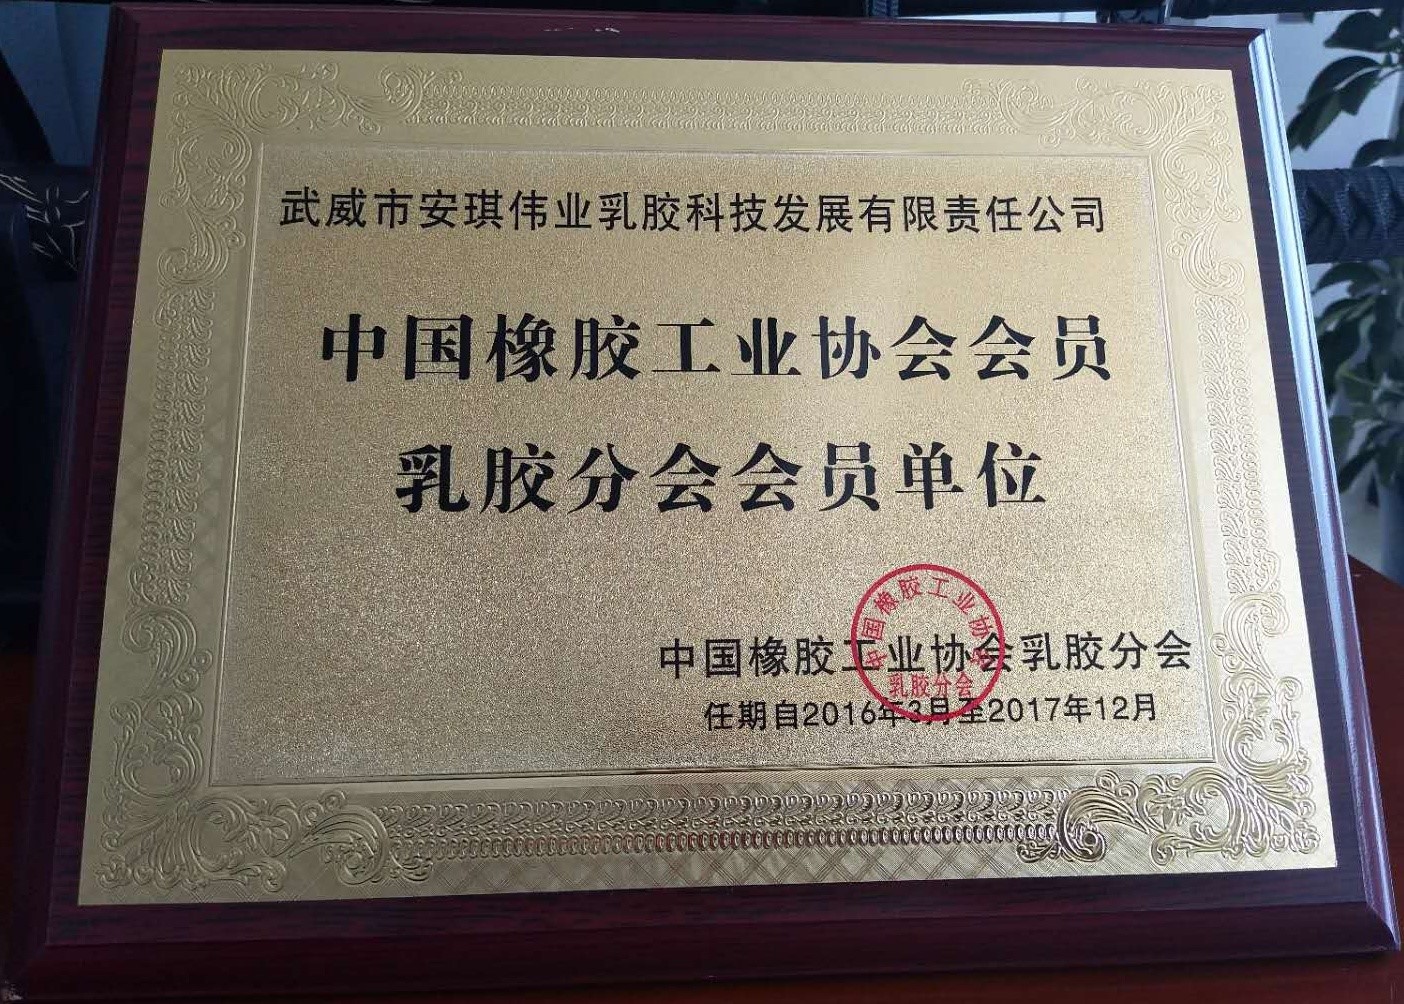 中國橡膠工業協會會員及乳膠分會會員單位